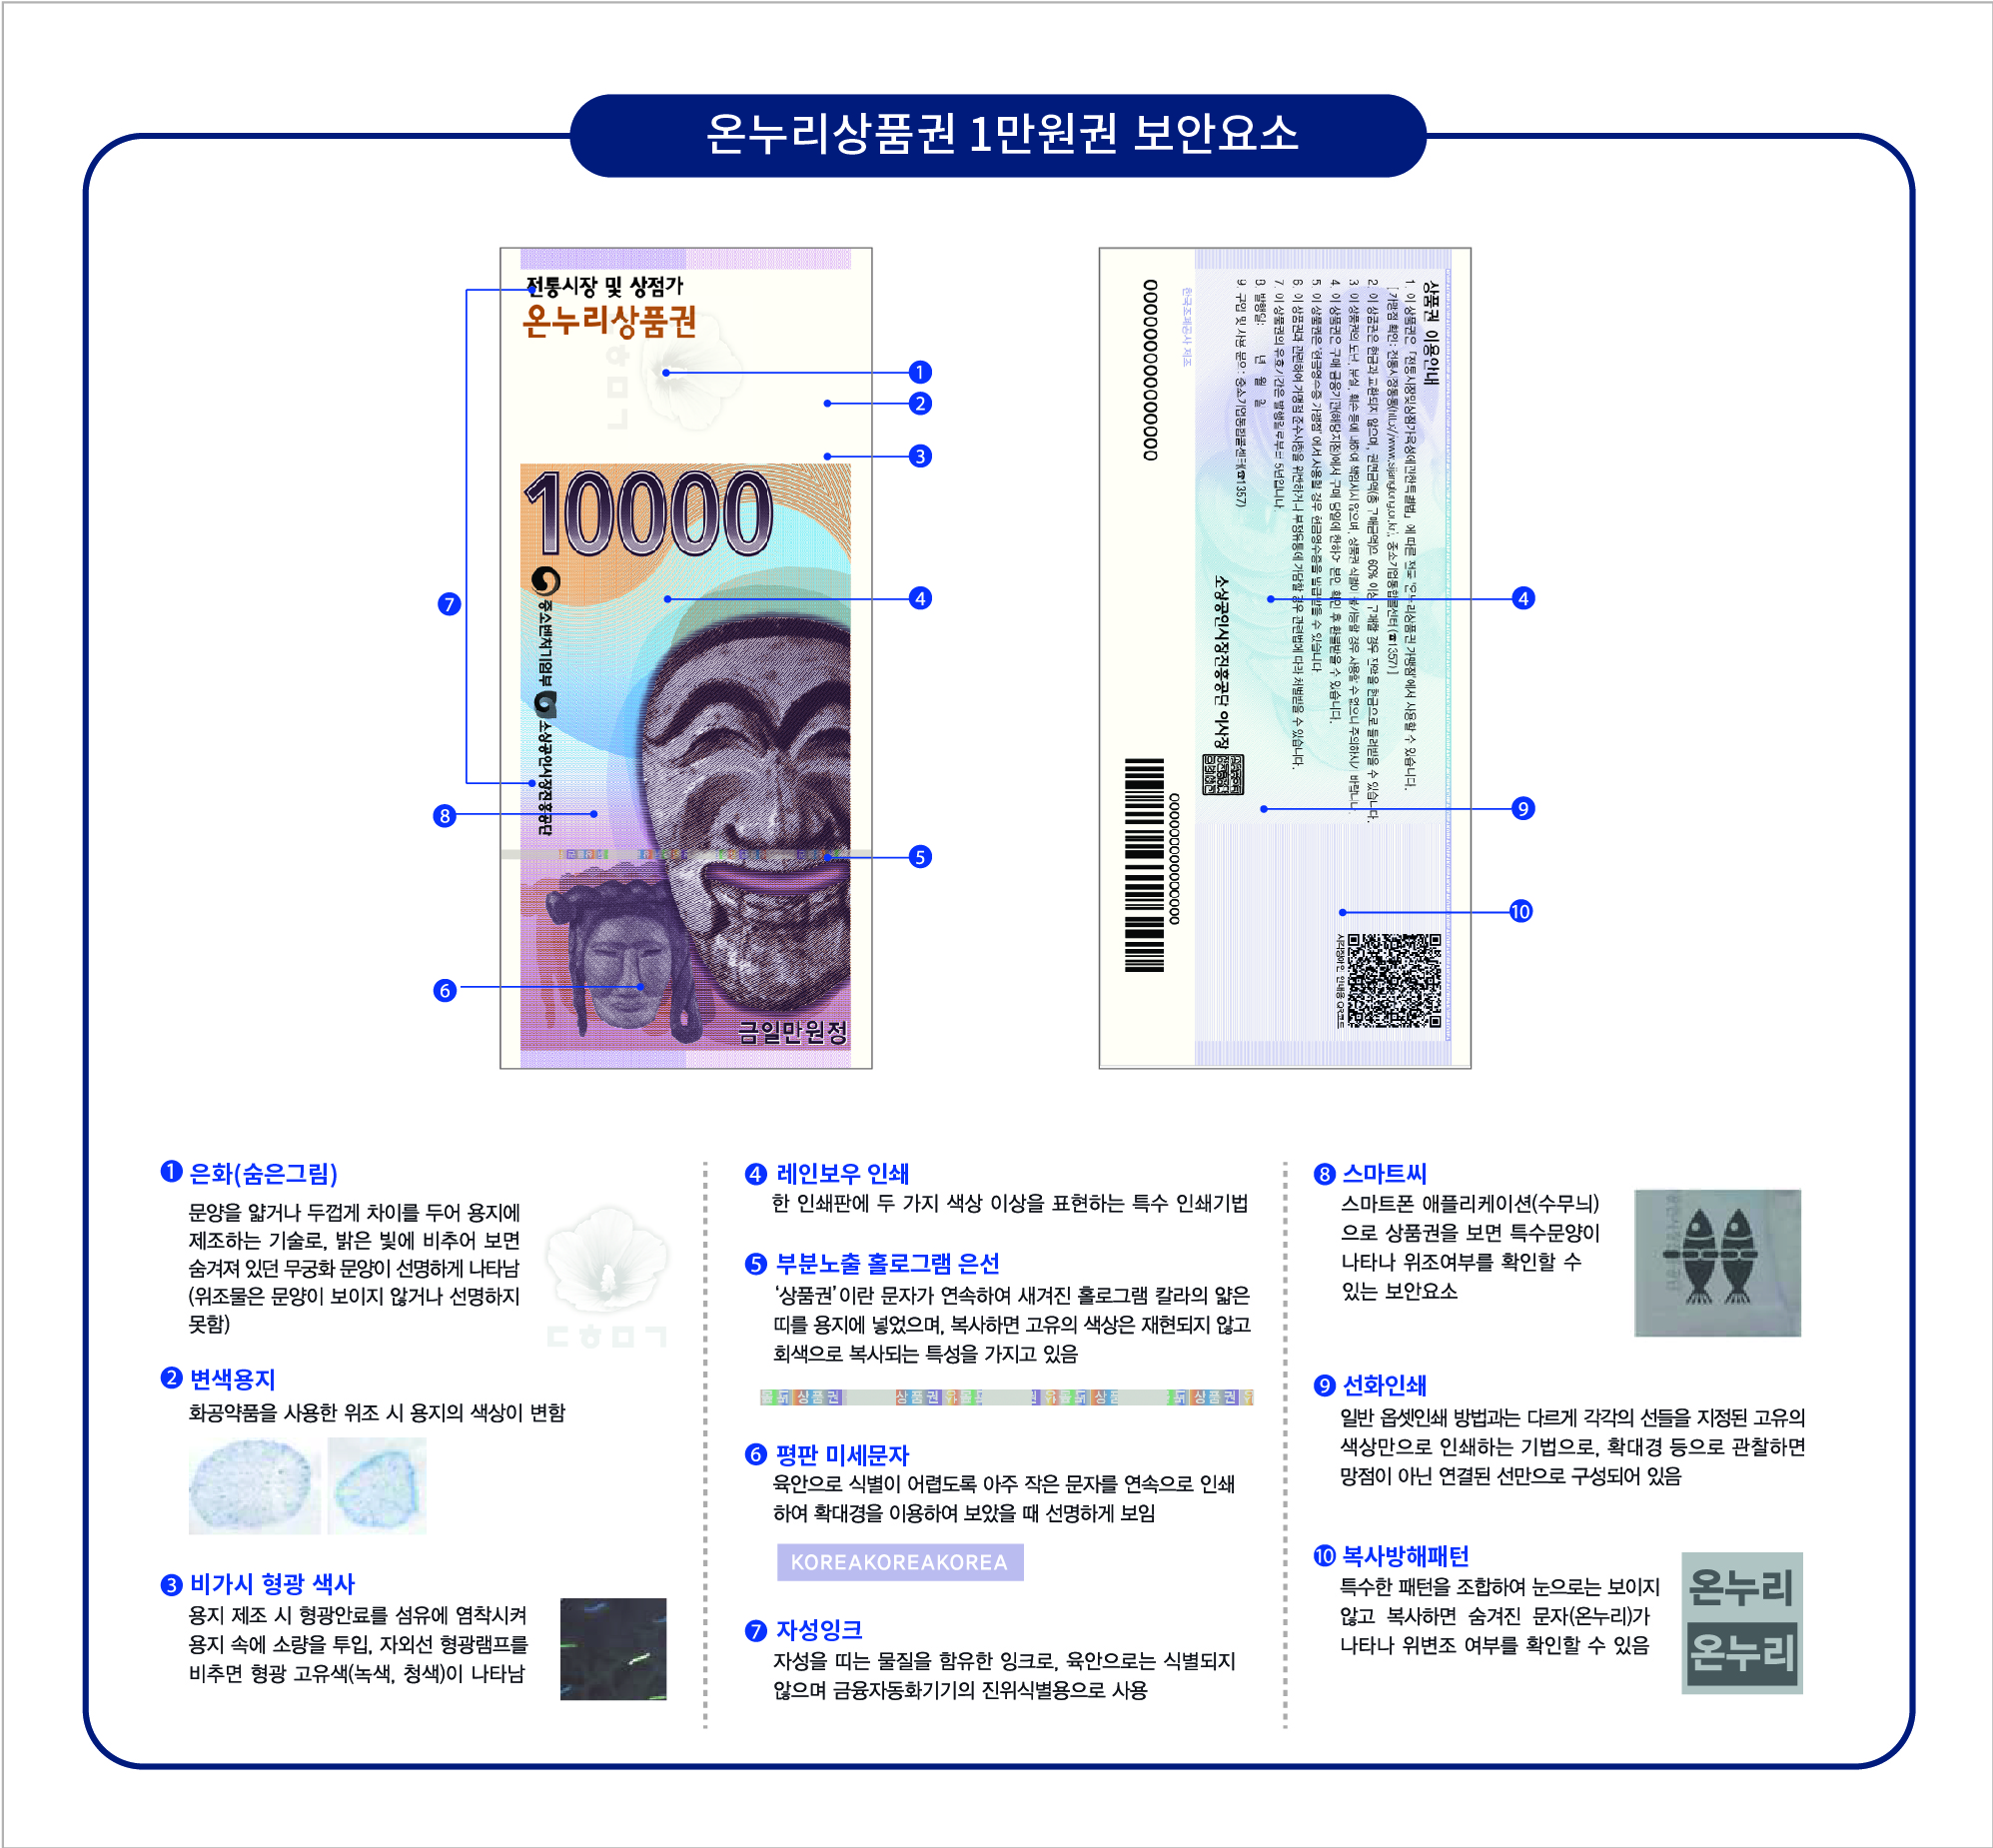 종이상품권 1만원권 위조방지 설명 